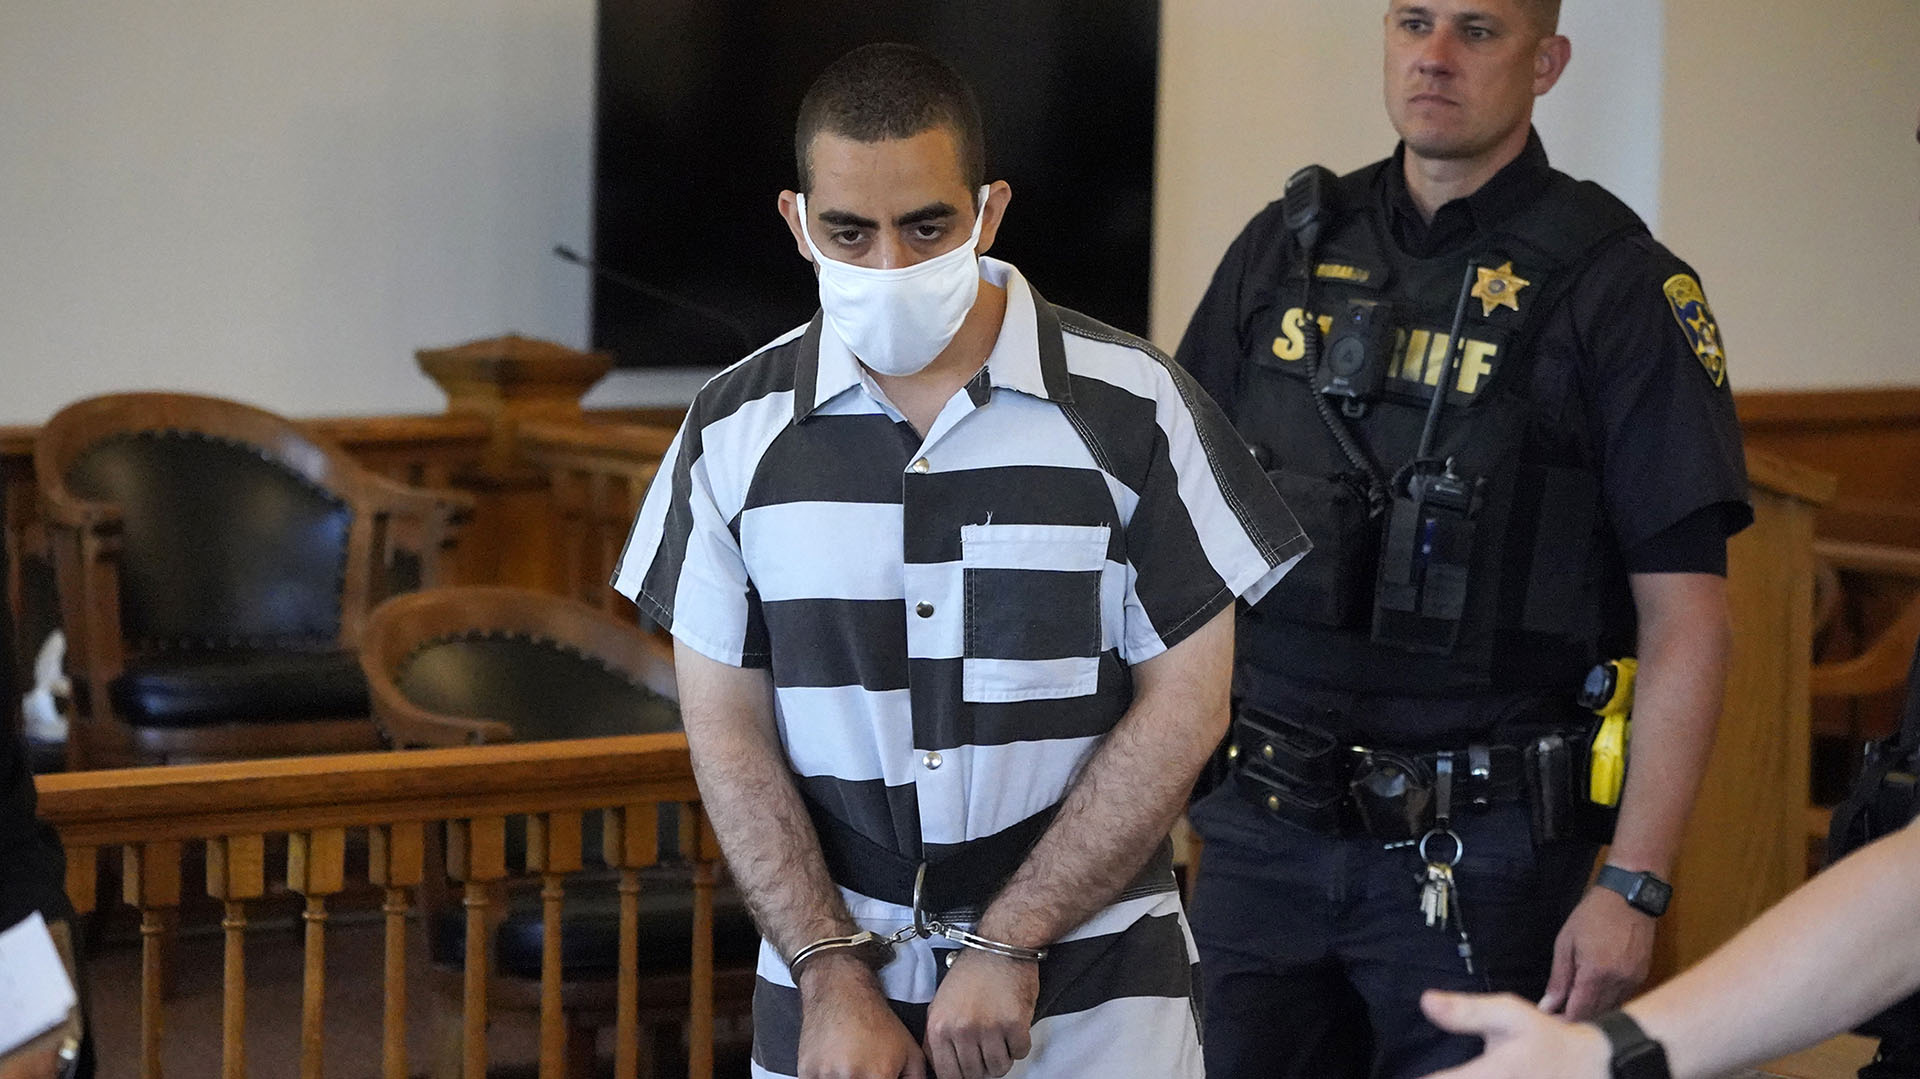 Hadi Matar, de 24 años, llegando a la Corte distrital de Chautauqua, en Mayville, Nueva York (AP Photo/Gene J. Puskar)